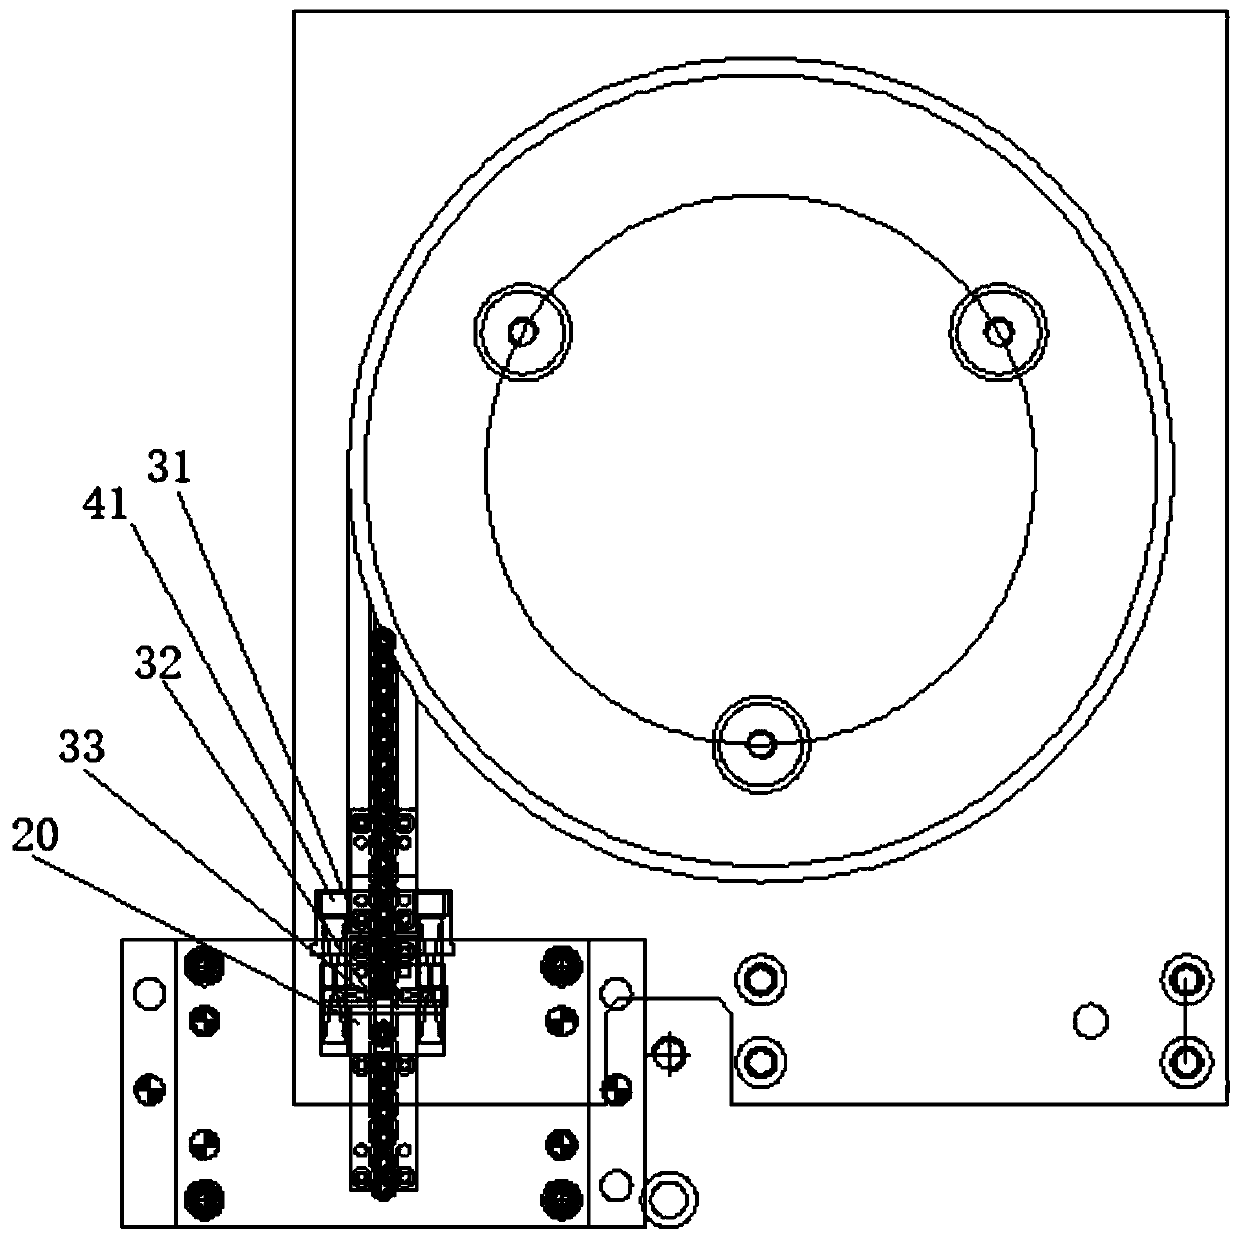 Full-automatic rivet feeding mechanism